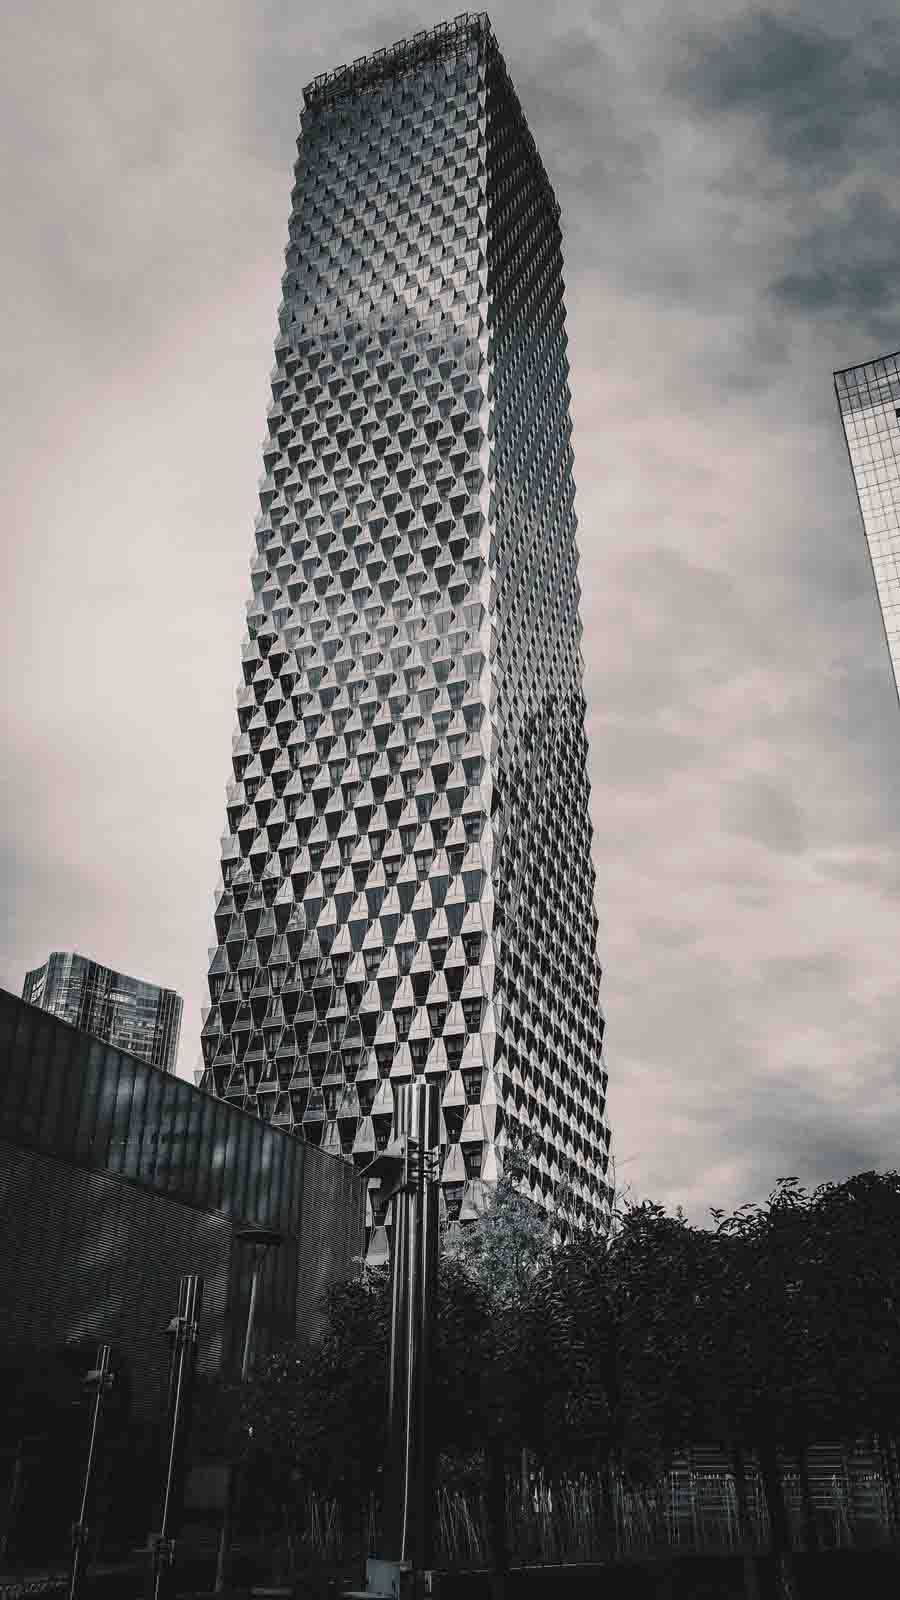 用PS制作3D立体风格的震撼视觉效果的高楼大厦海报